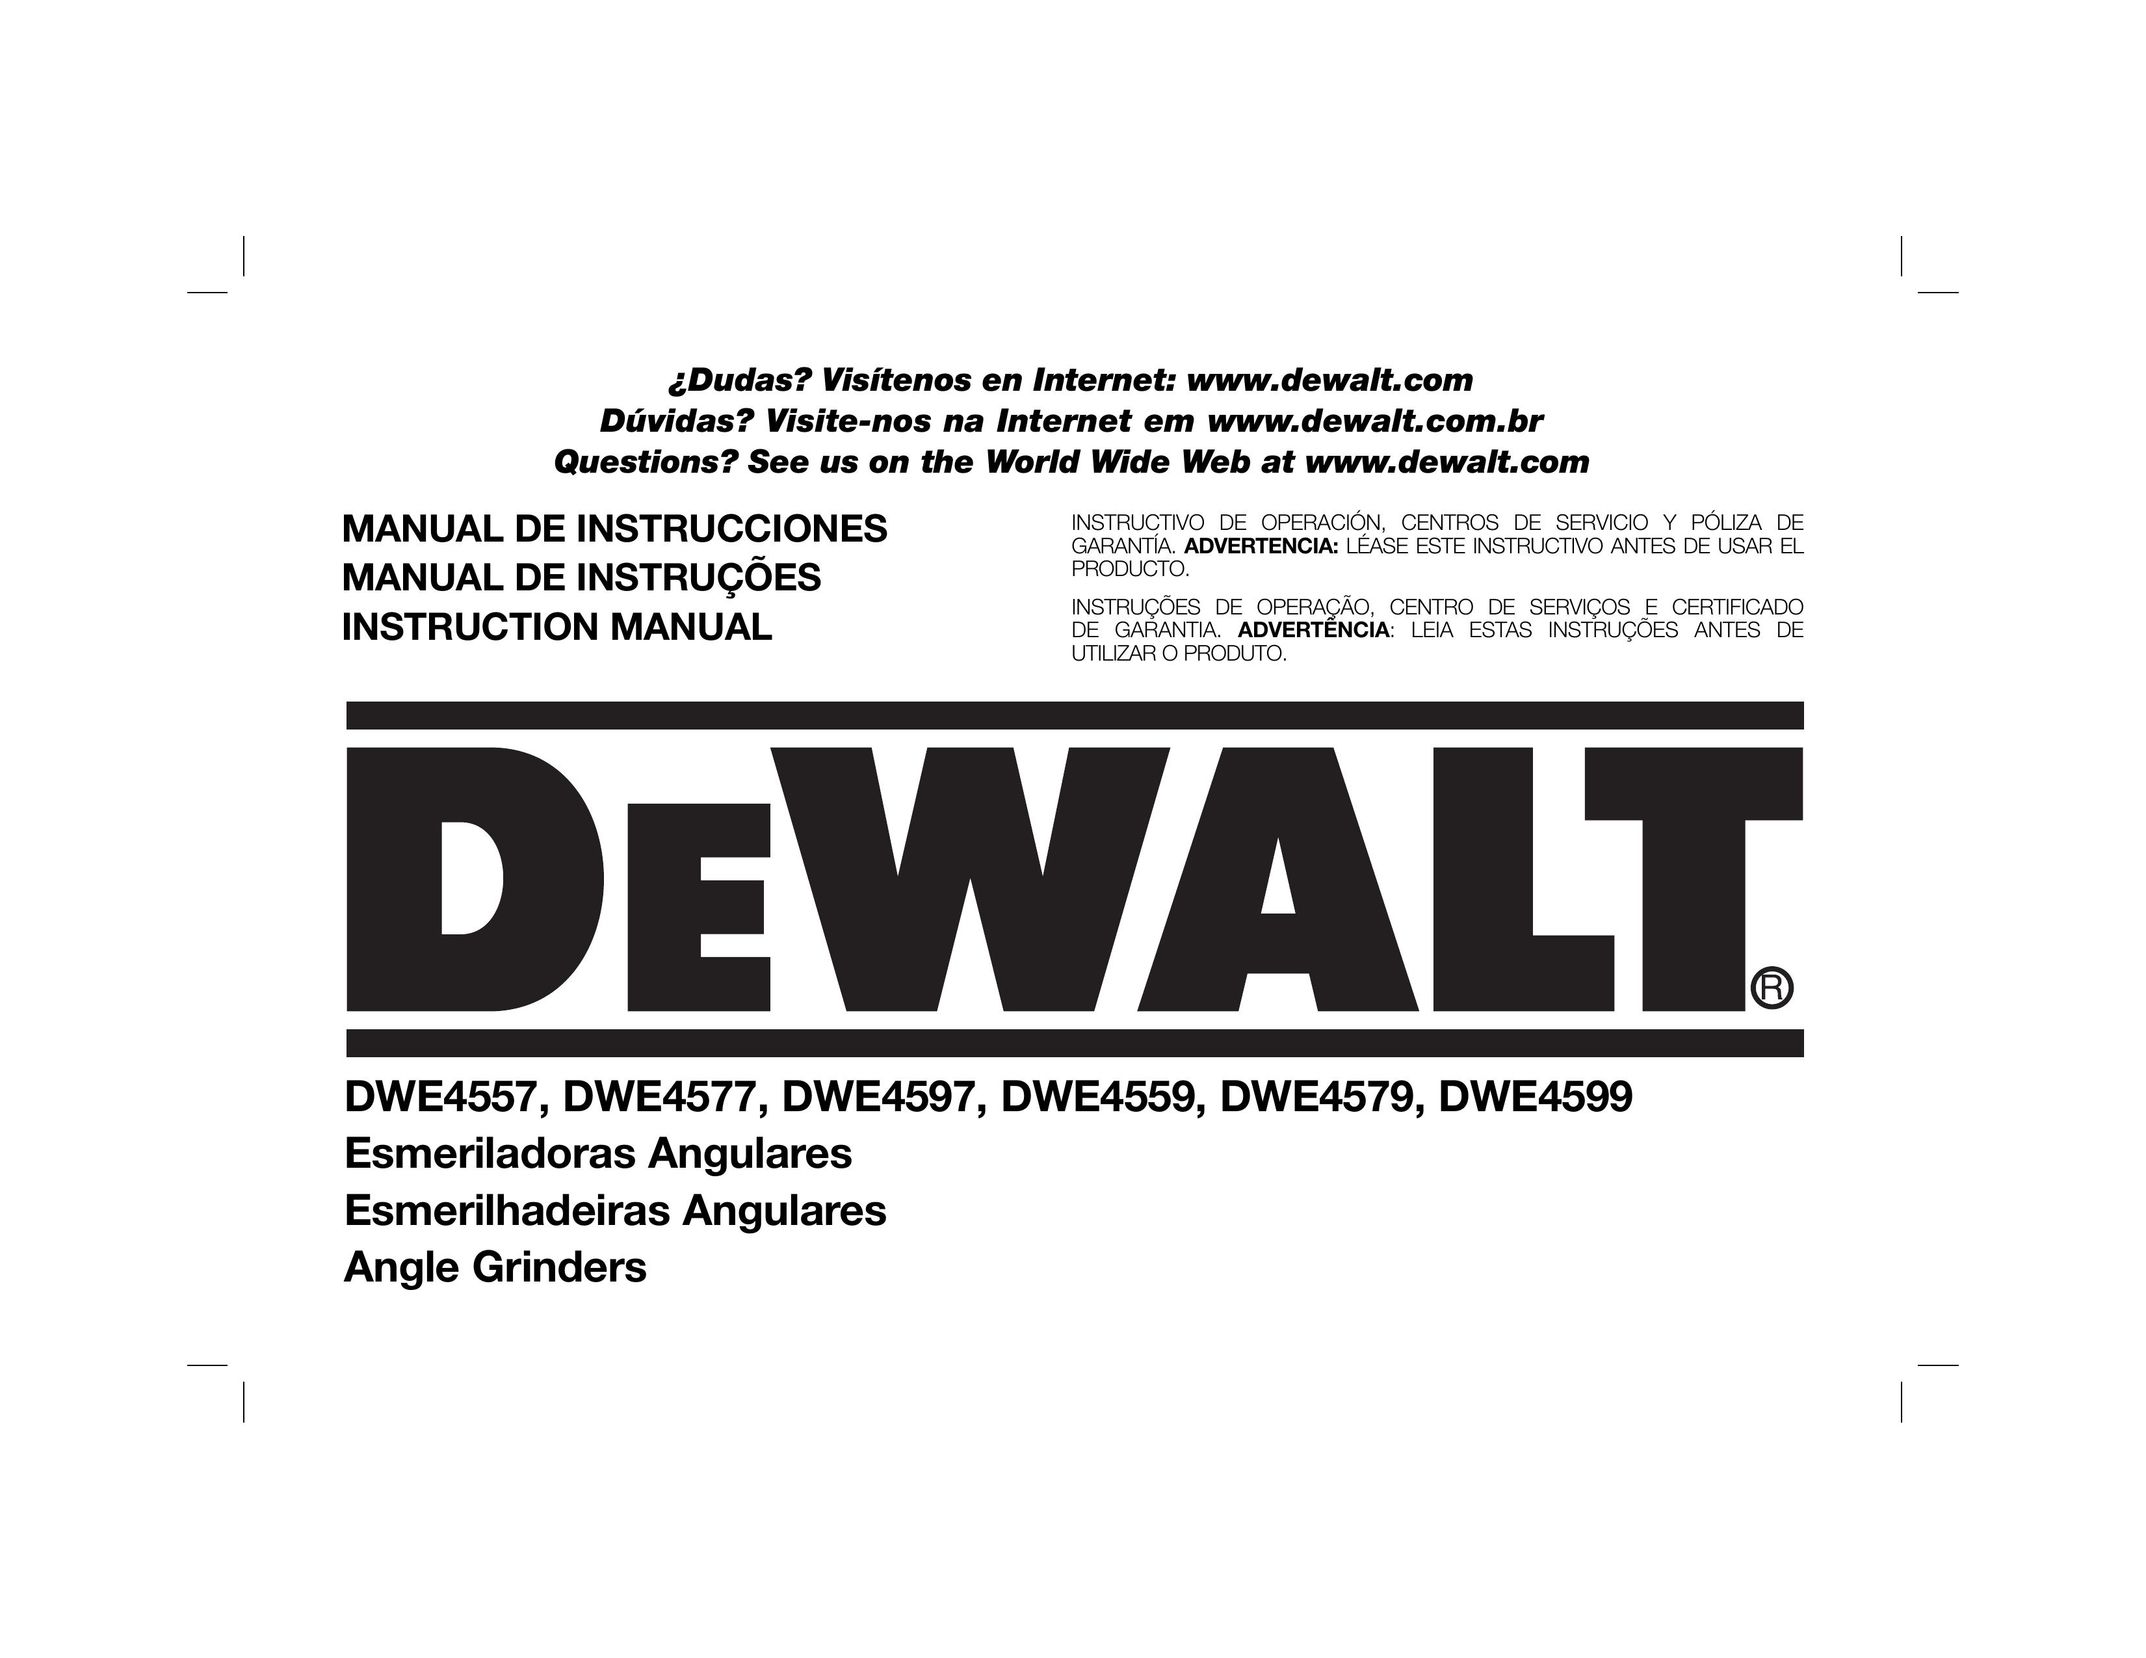 DeWalt DWE4557 Grinder User Manual